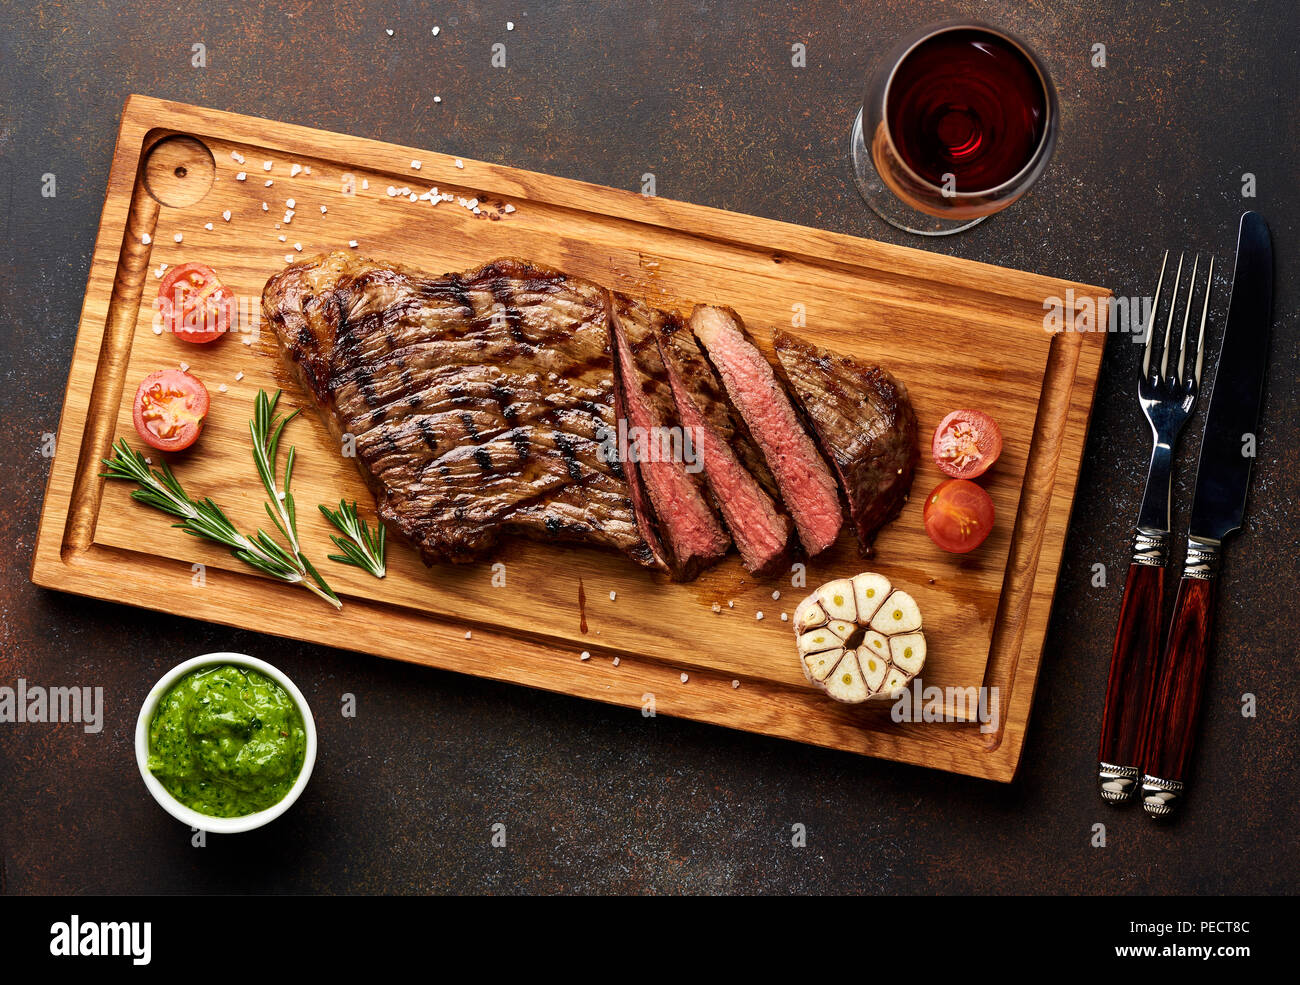 Black Angus Steak grillé et un verre de vin rouge avec sauce Chimichurri la viande sur une planche à découper. Banque D'Images